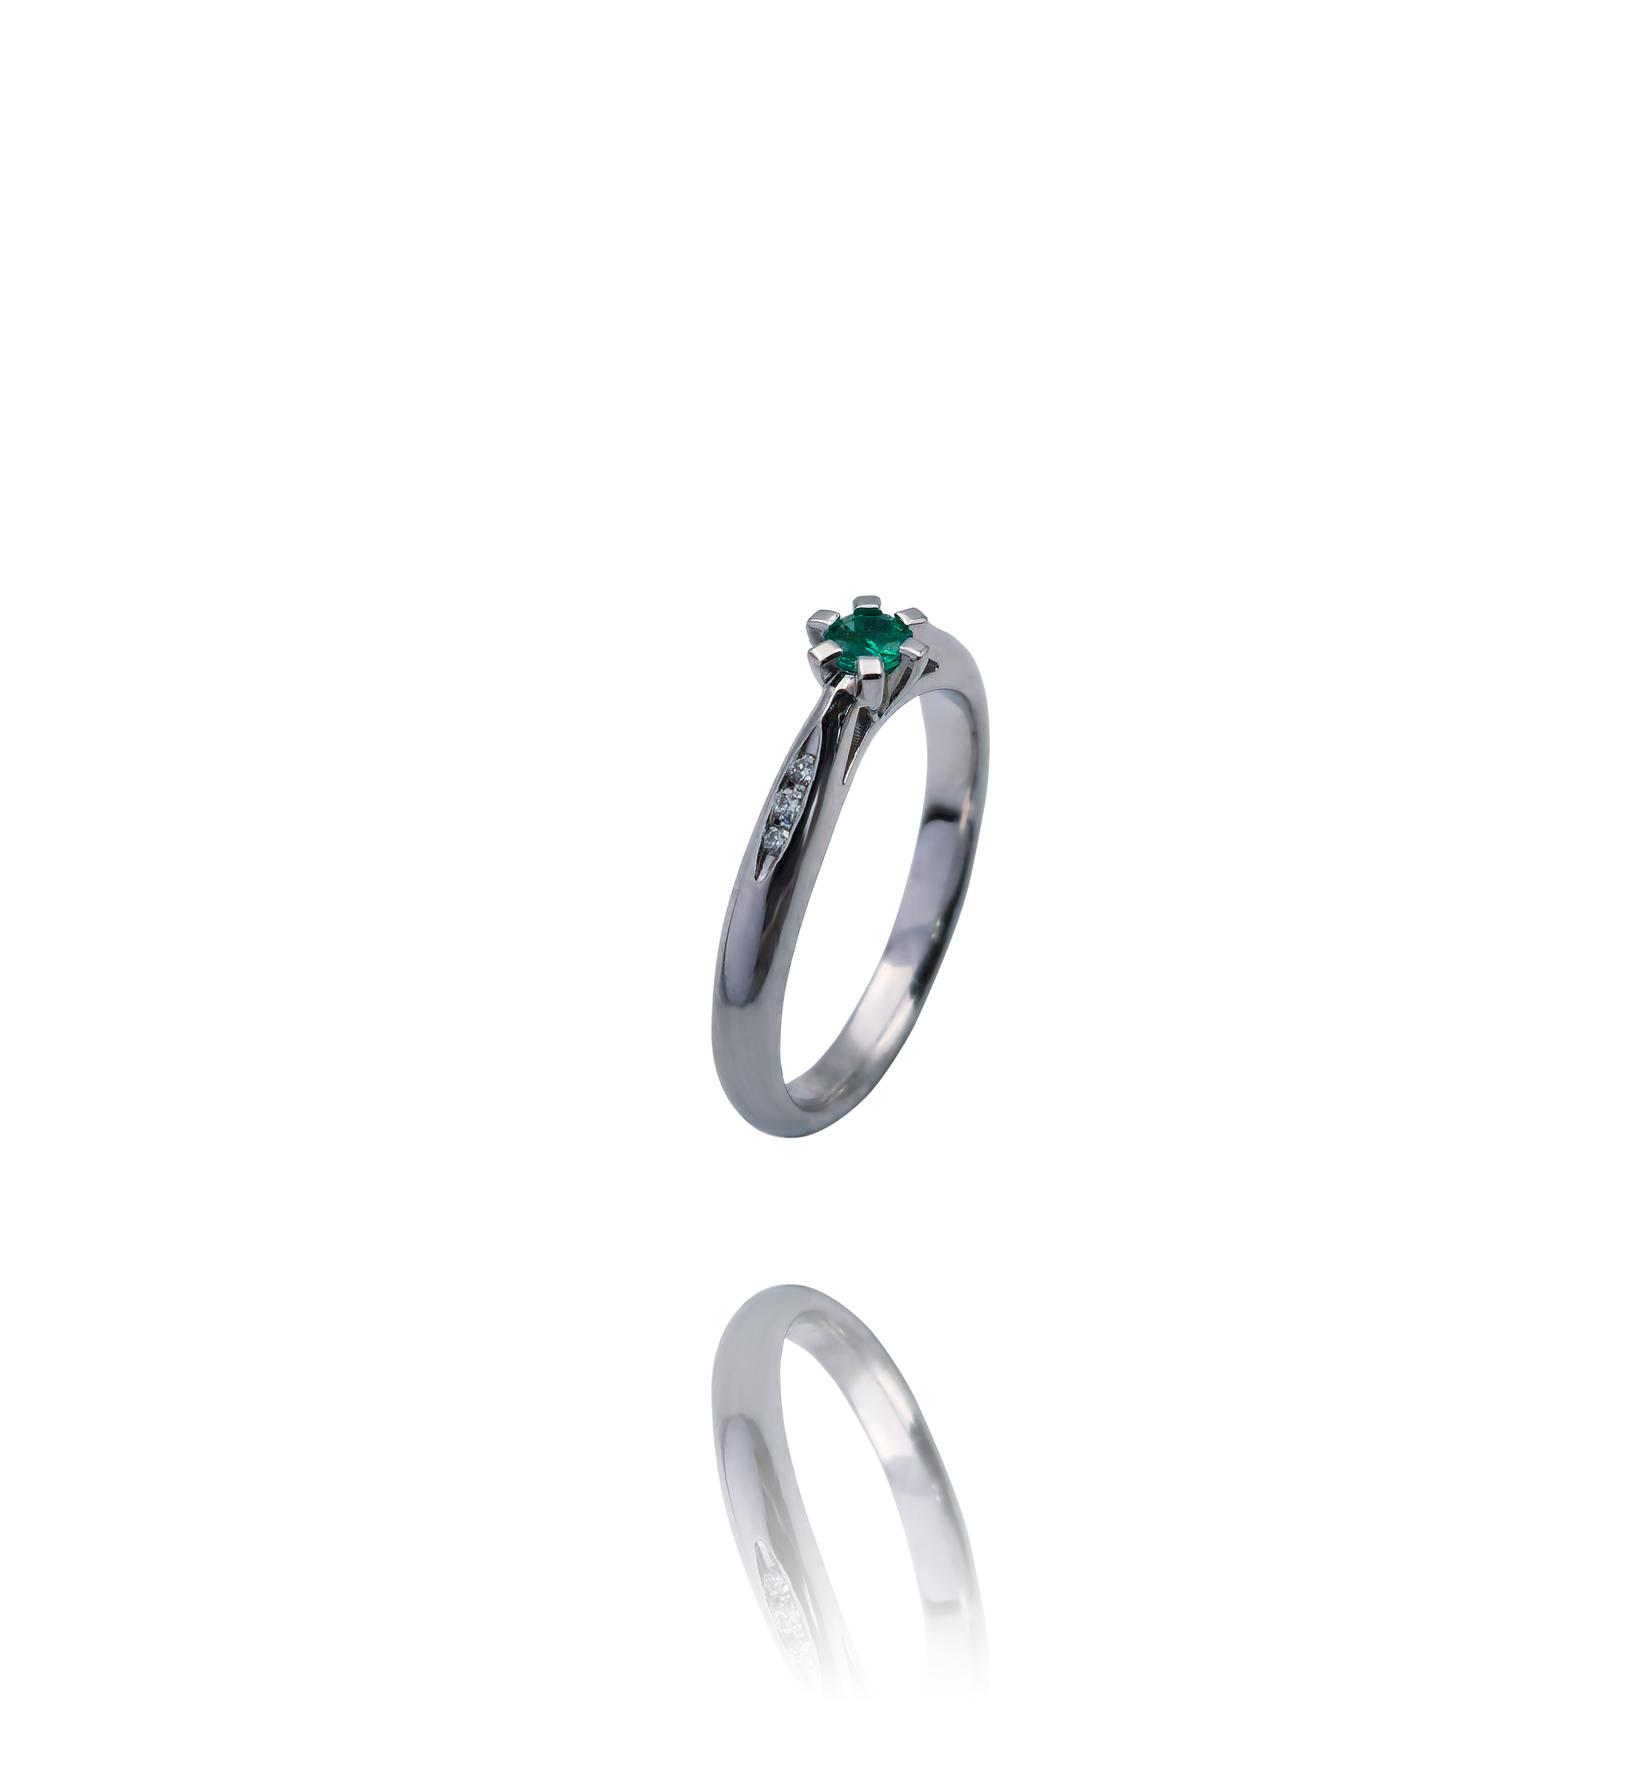 Selected image for Ženski prsten od Belog zlata sa Brilijantima i Smaragdom, 585, 22mm